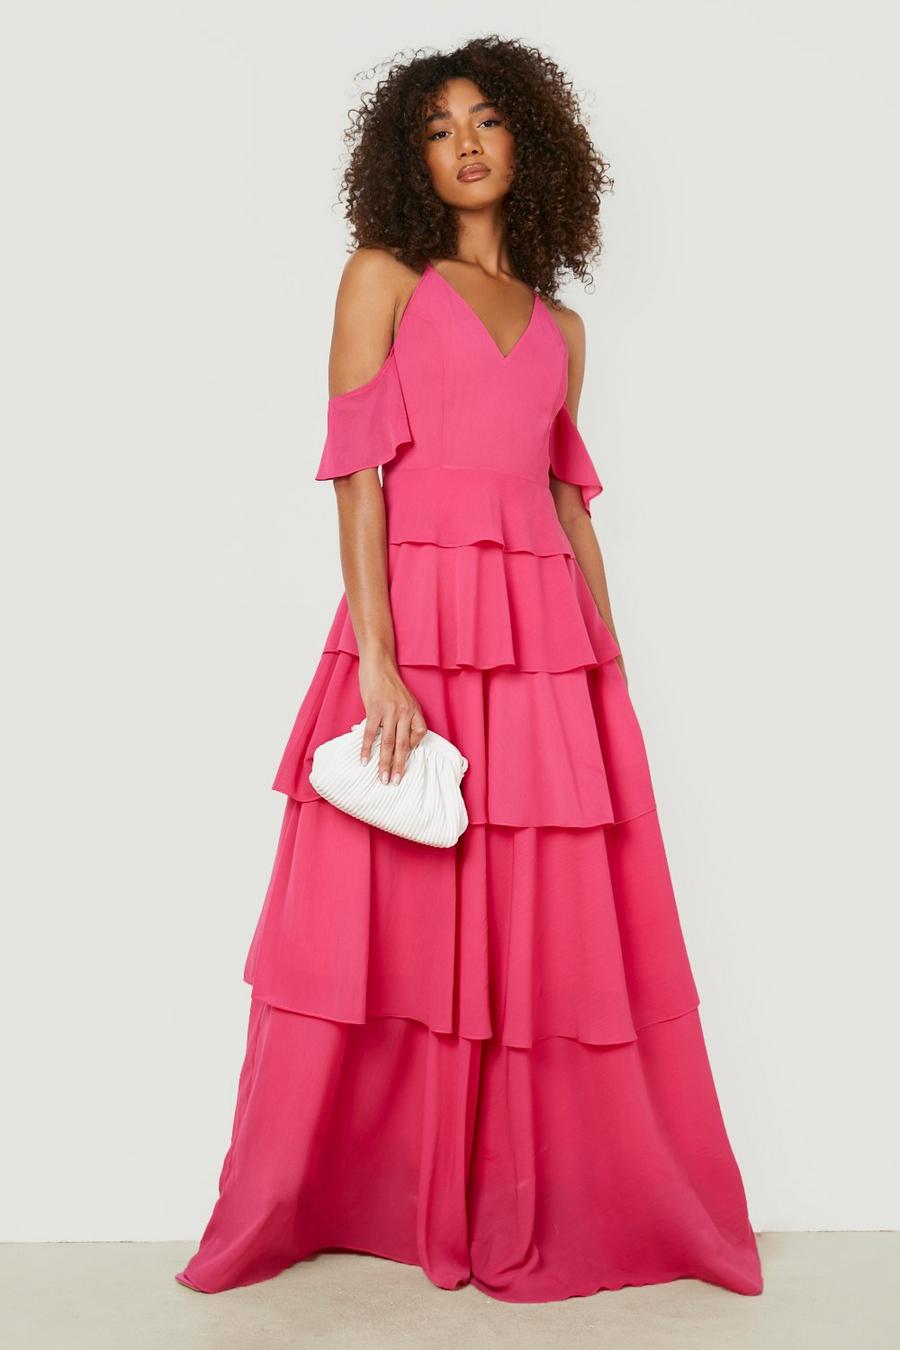 ורוד לוהט rosa שמלת מקסי מדורגת לאירועים לנשים גבוהות